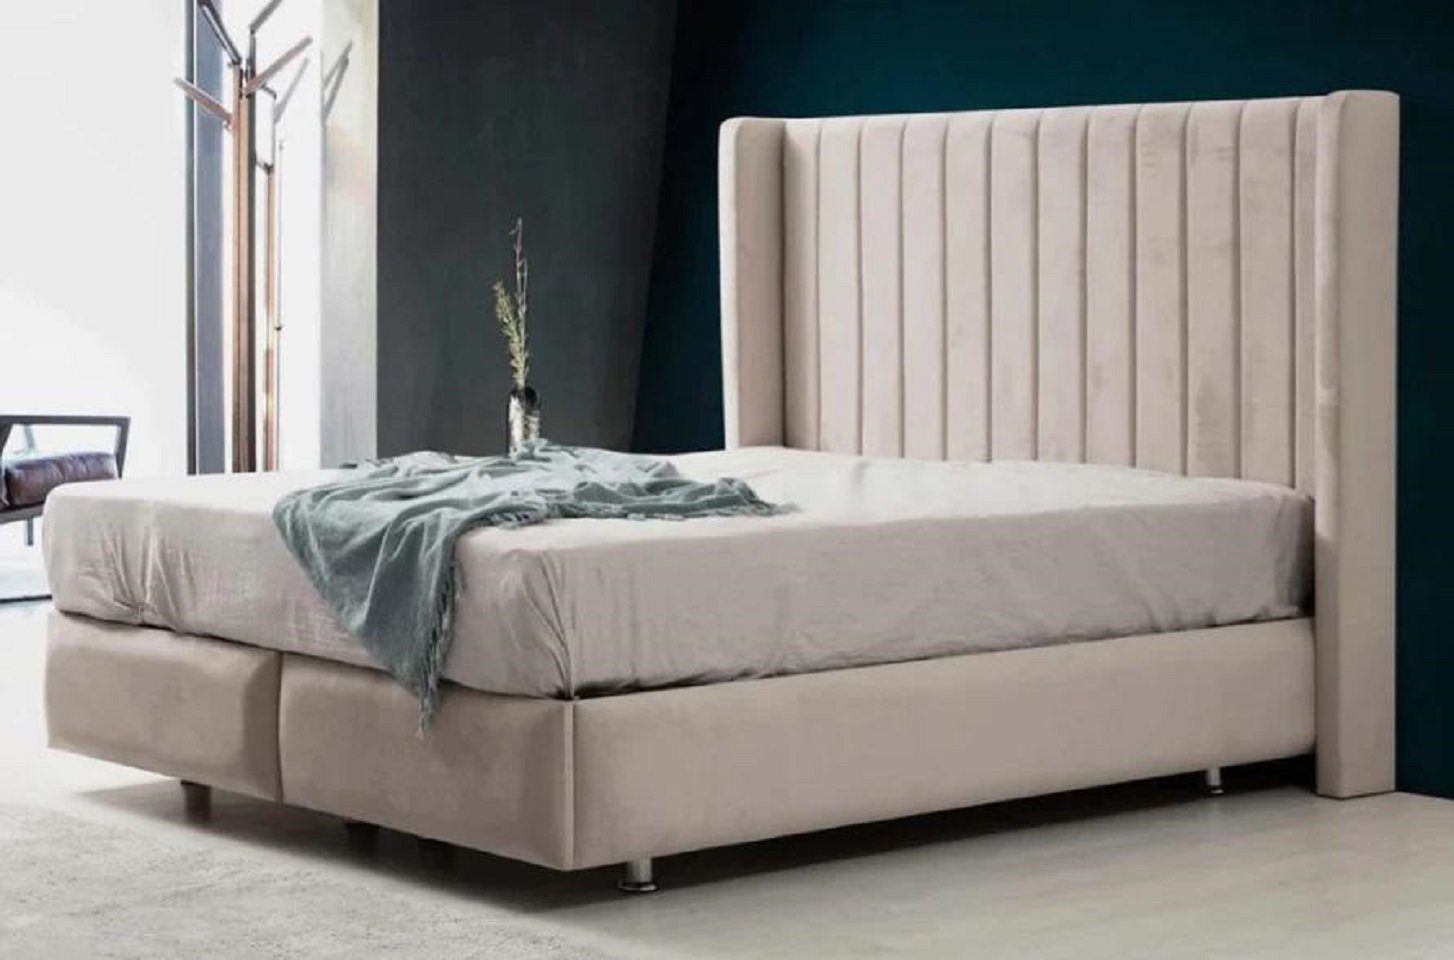 JVmoebel Bett Schlafzimmer Luxus Bett Modern Neu stilvolles im modernen Beige (1-tlg., Nur Bett), Made in Europe